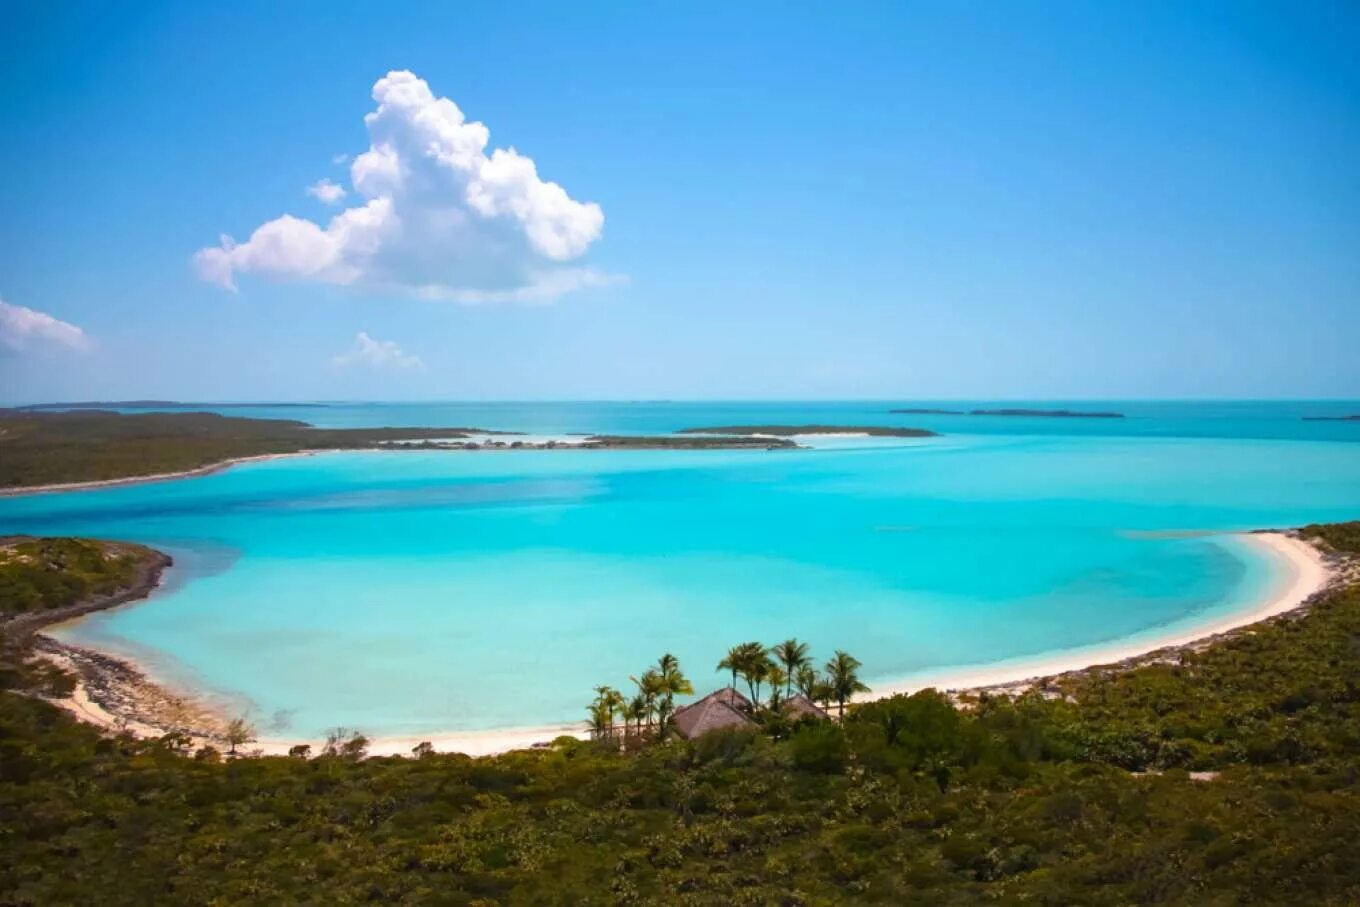 Musha cay, Багамы. Остров Муша Кей. Musha cay (Маша Кей), Багамы. Виргинские острова Багамы. Bahamas islands